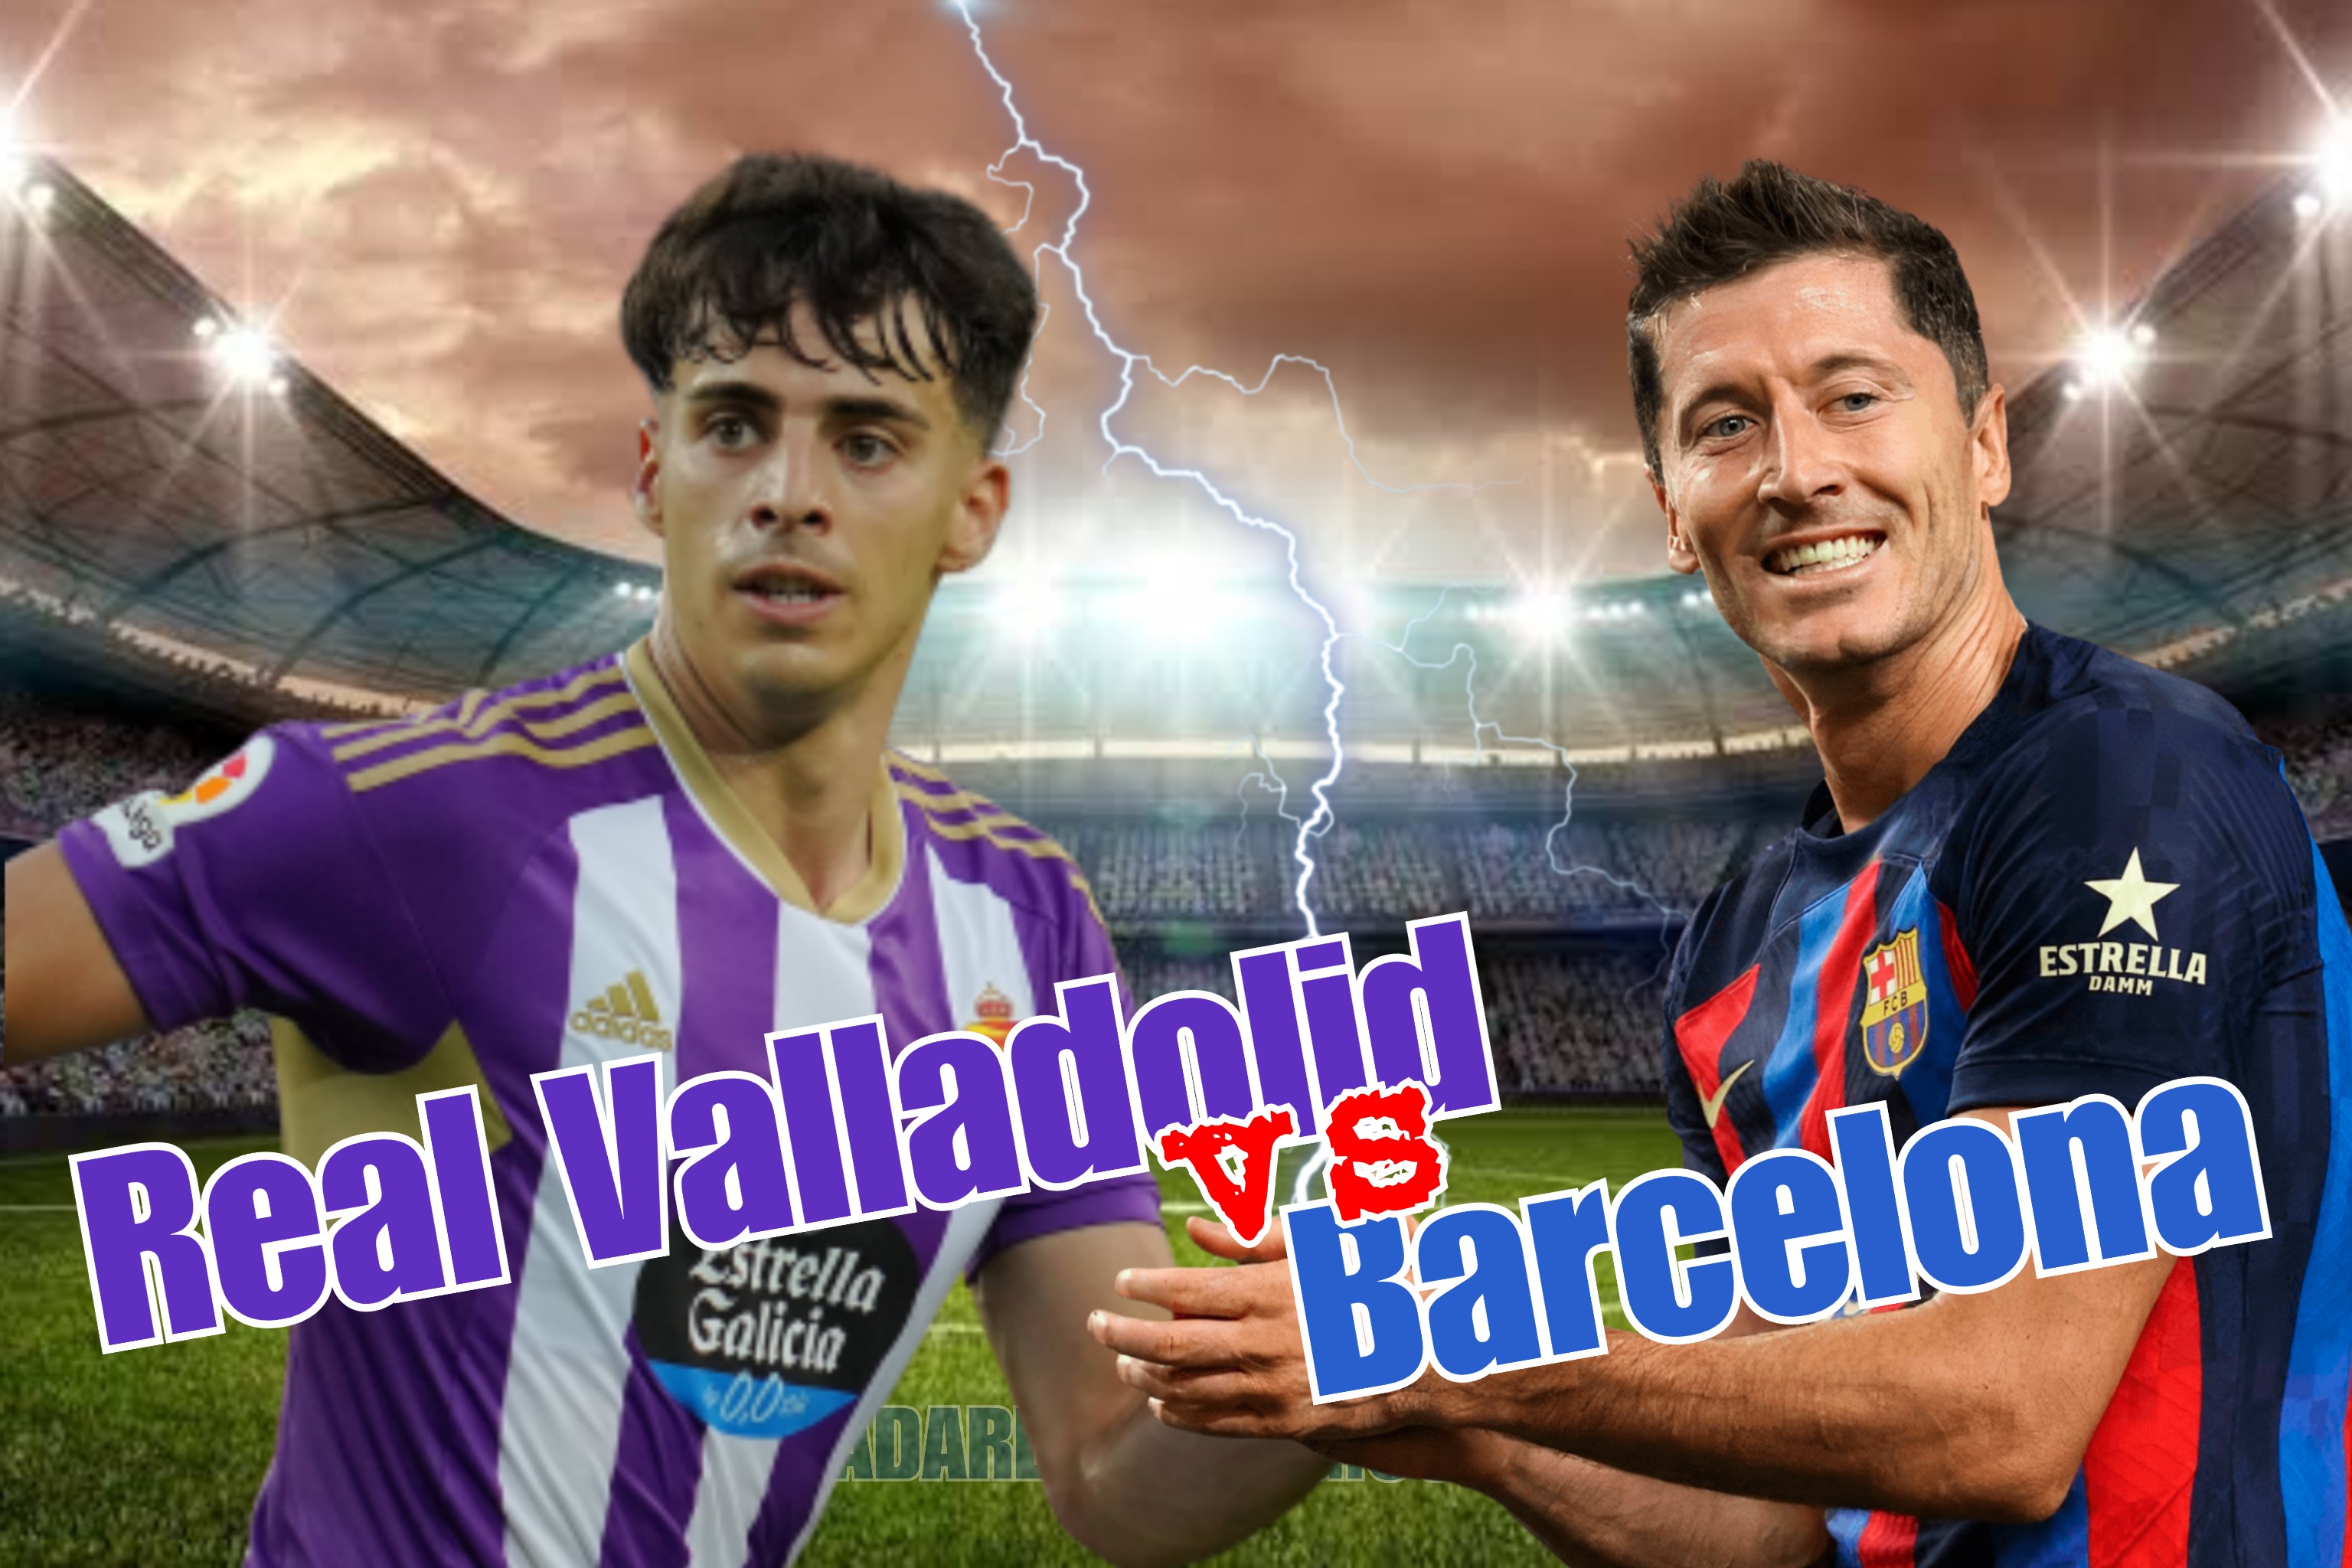 Prediksi Skor Real Valladolid vs Barcelona di Liga Spanyol: Starting Line-up, Head to Head, dan Preview Tim